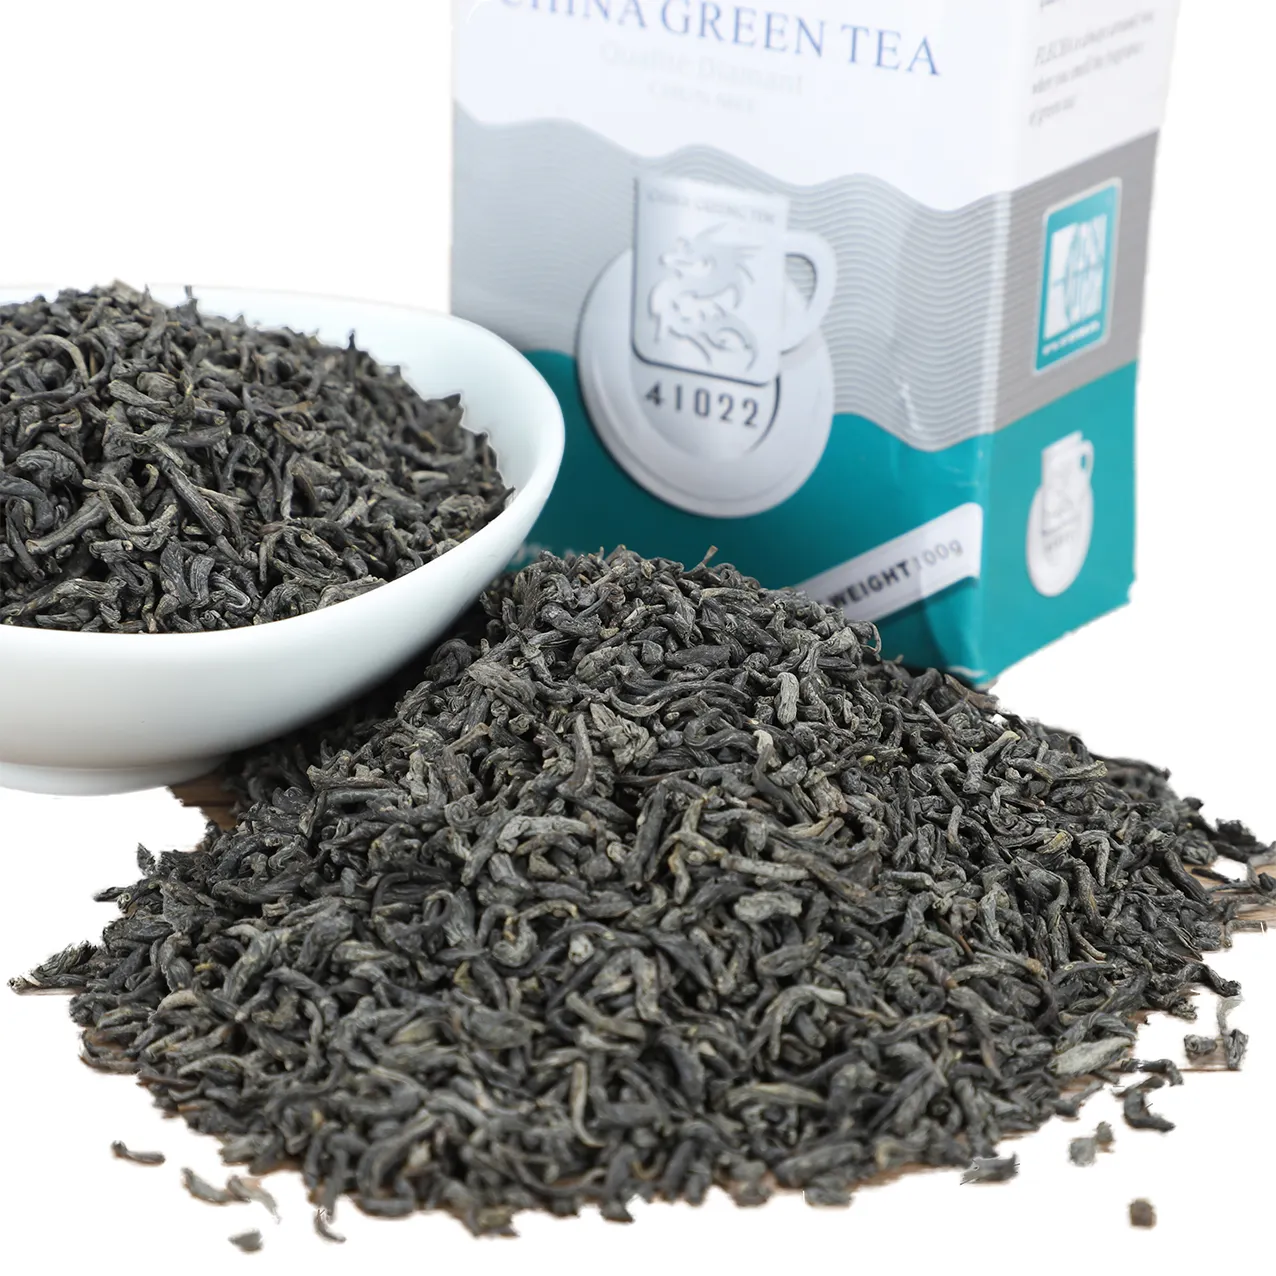 Commercio all'ingrosso della fabbrica migliore l'aroma e il gusto chunmee tè verde il tè verde vert 4011,41022, 9371